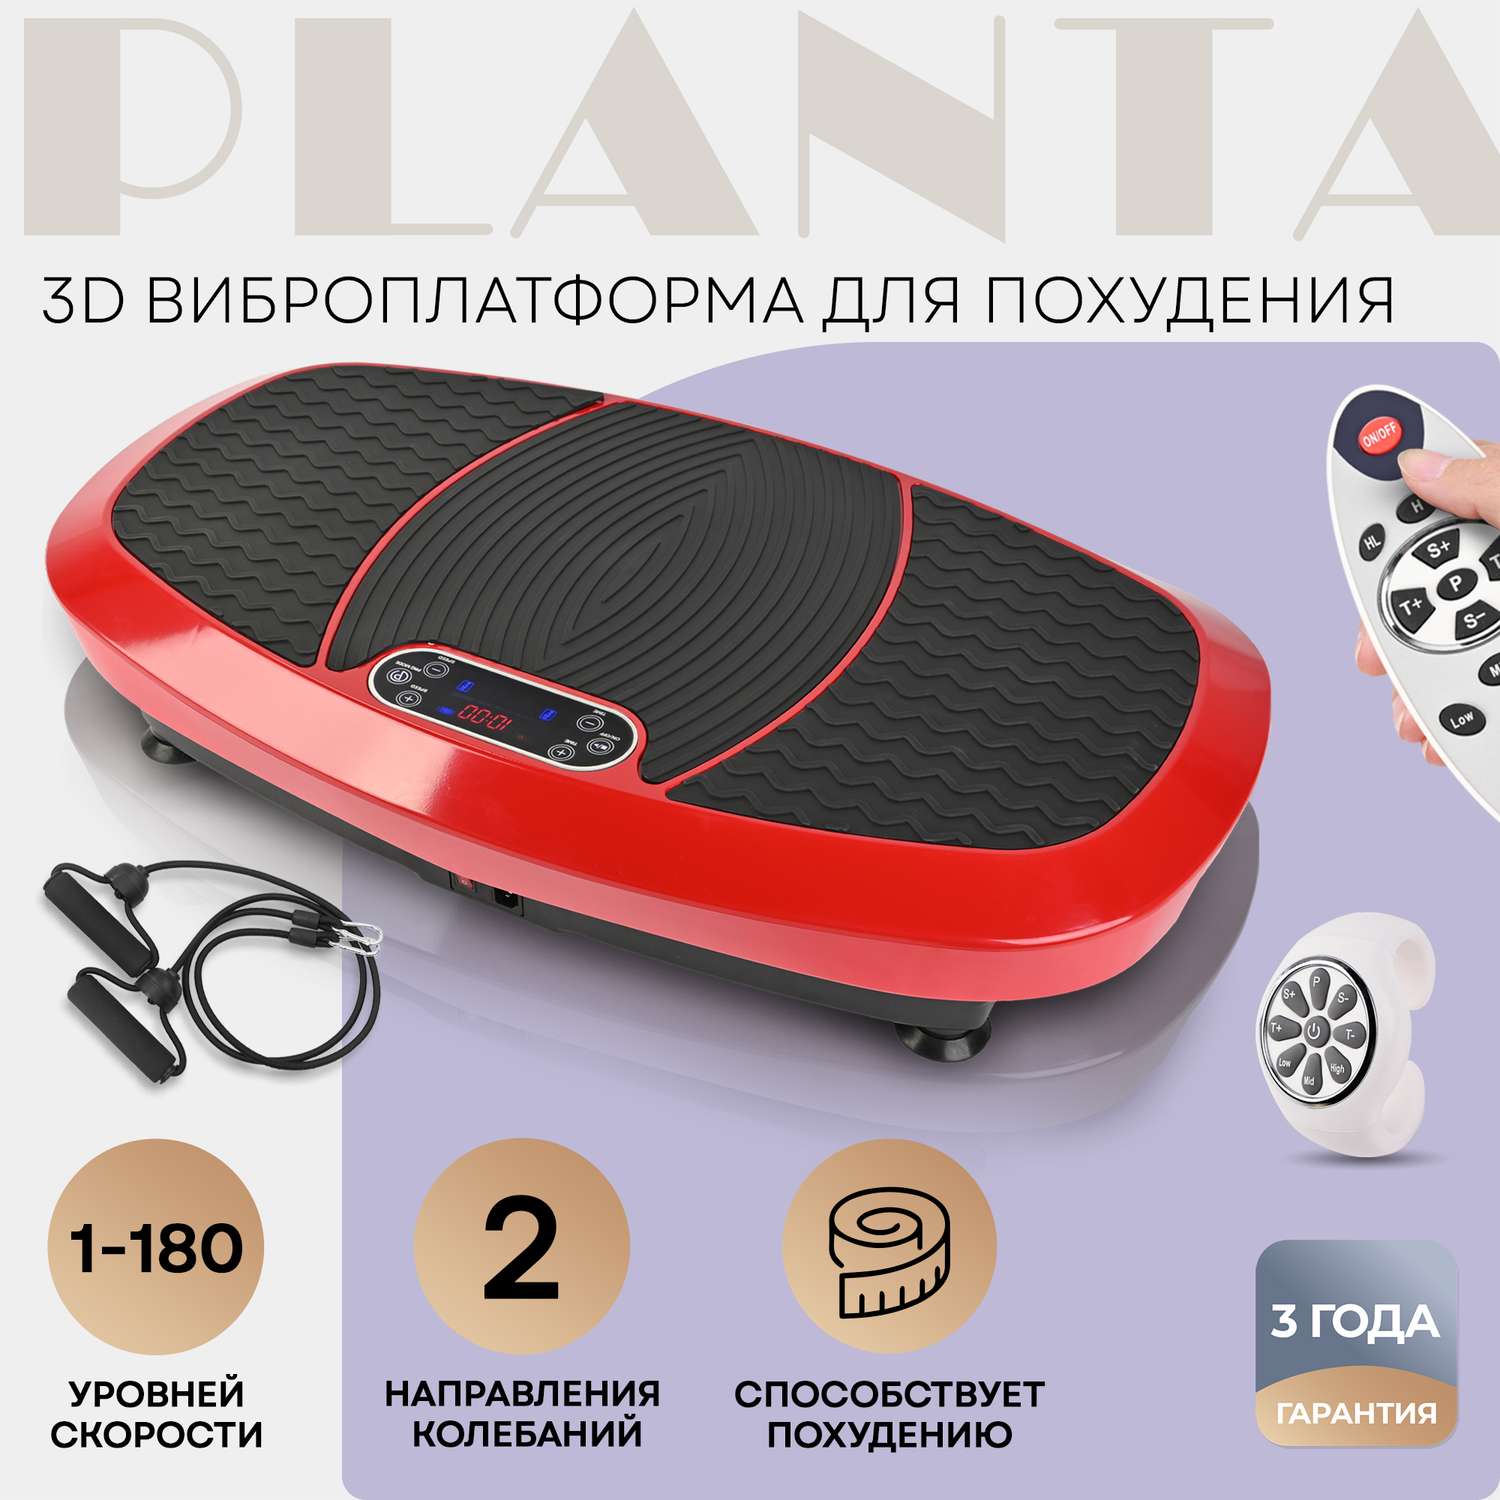 Виброплатформа Planta 3D VP-15 вибрация в 2х направлениях 5 программ - фото 1